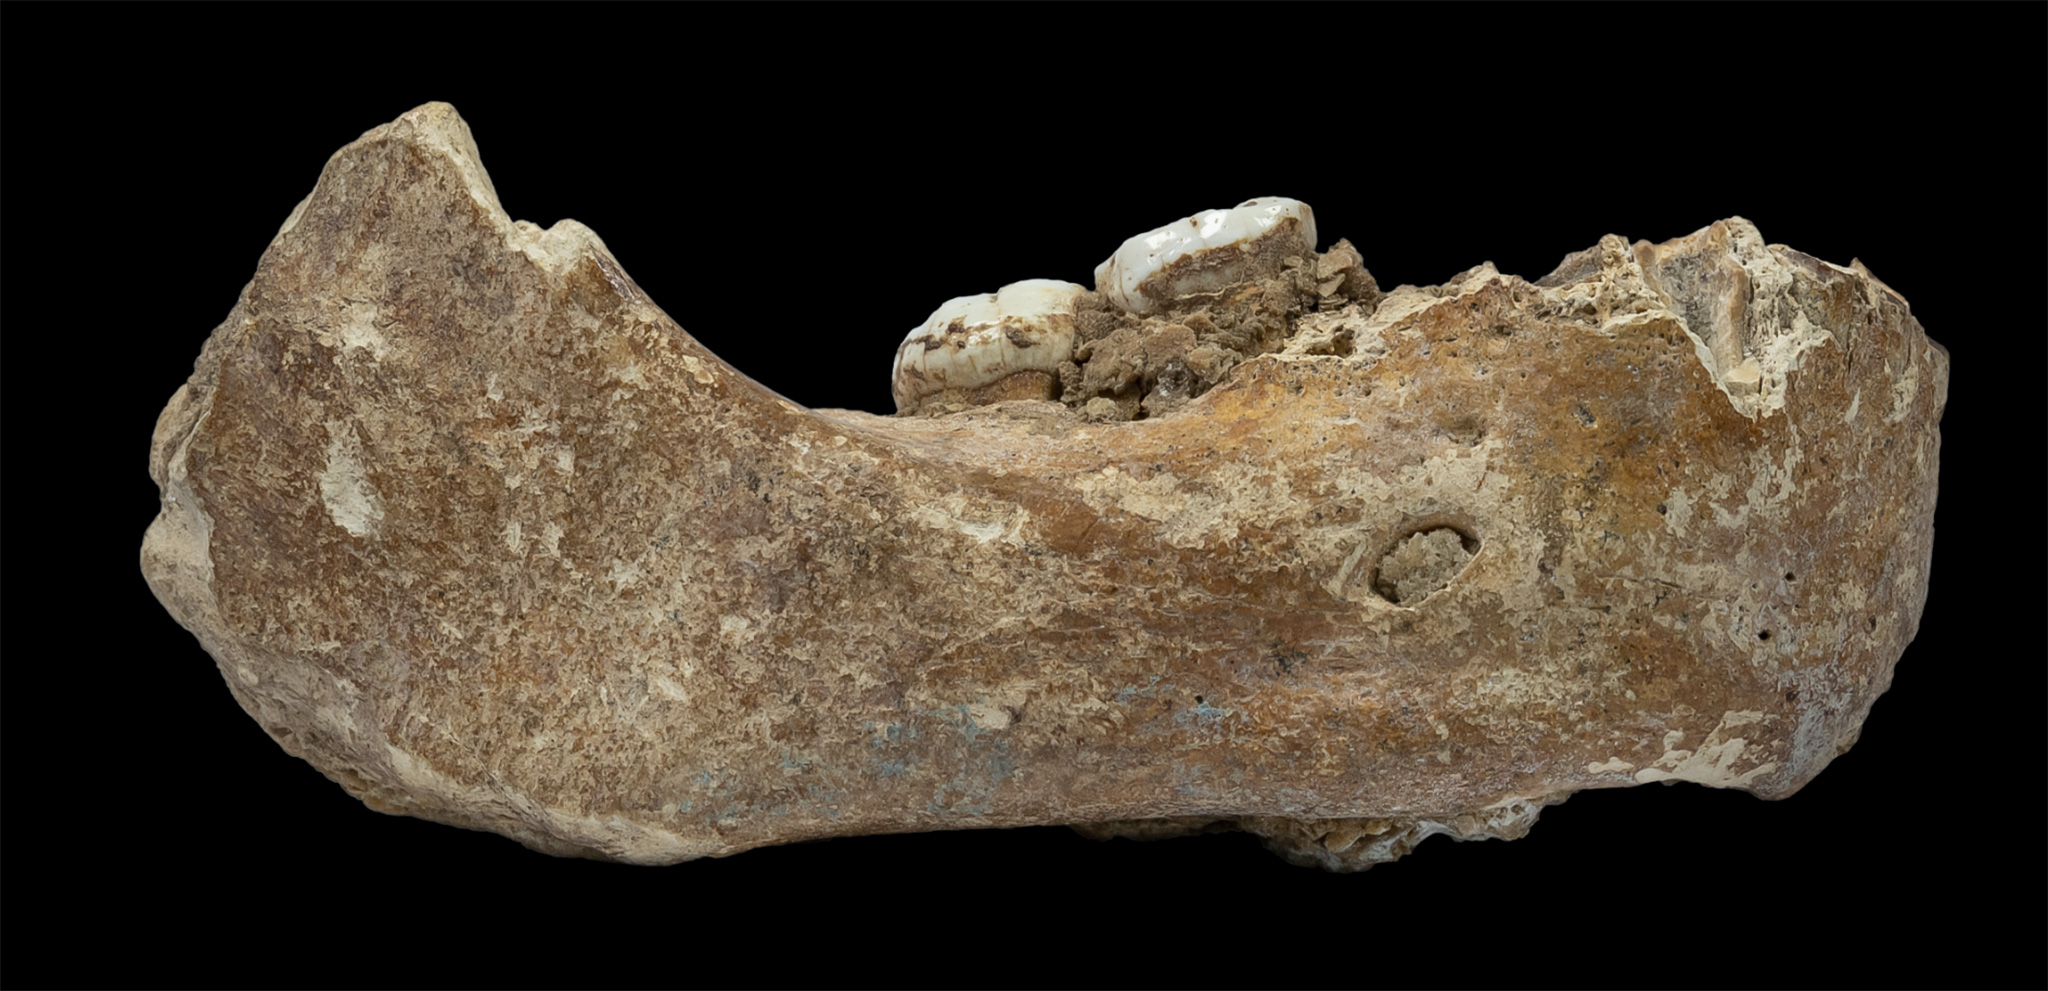 Hallan en Tibet fósil de antepasado humano de 160 mil años